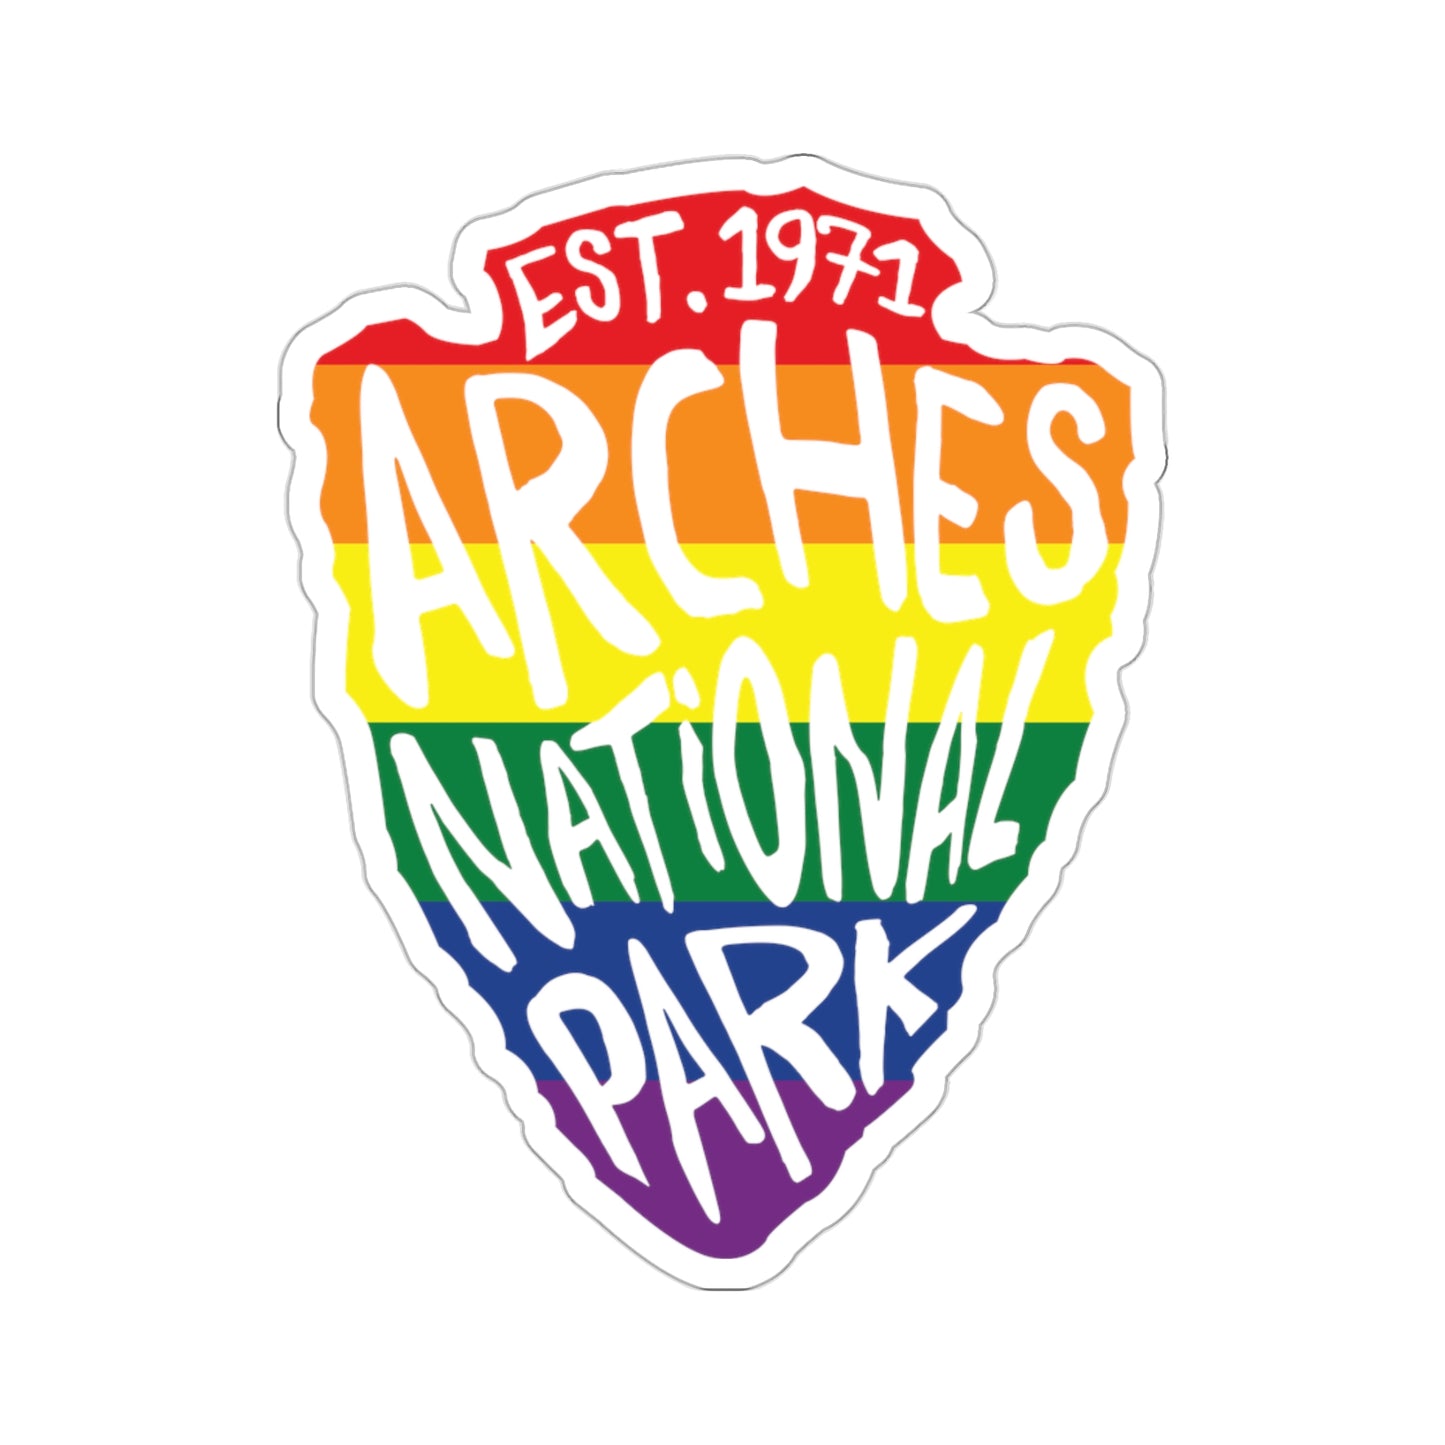 Arches National Park Sticker - Rainbow Arrow Head Design